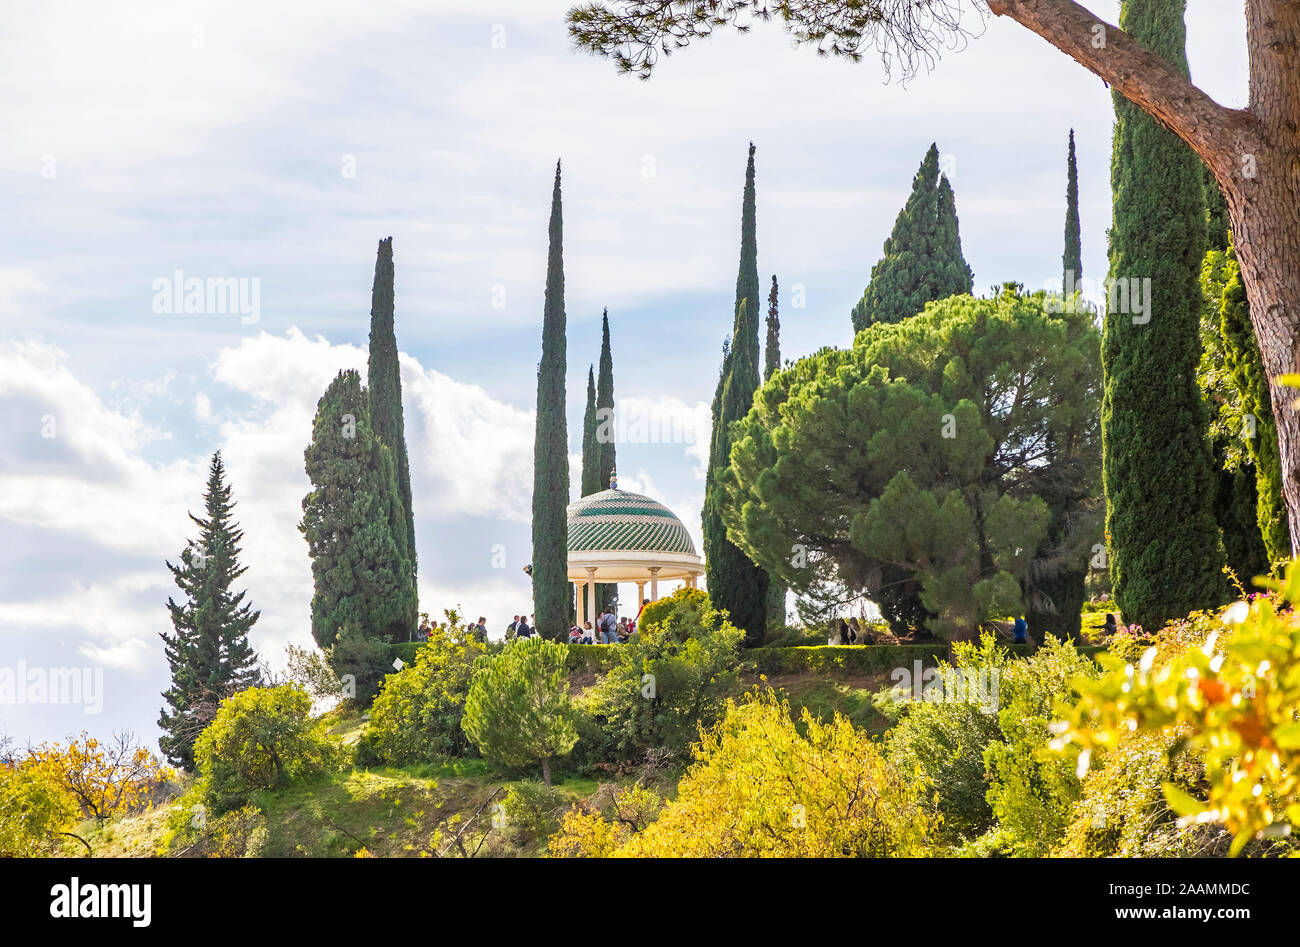 Mirador, historische Sicht und Symbol der Botanische Garten (Jardin Botanico La Concepcion) in Malaga. Einer der wenigen Gärten mit subtropischen Klima Stockfoto